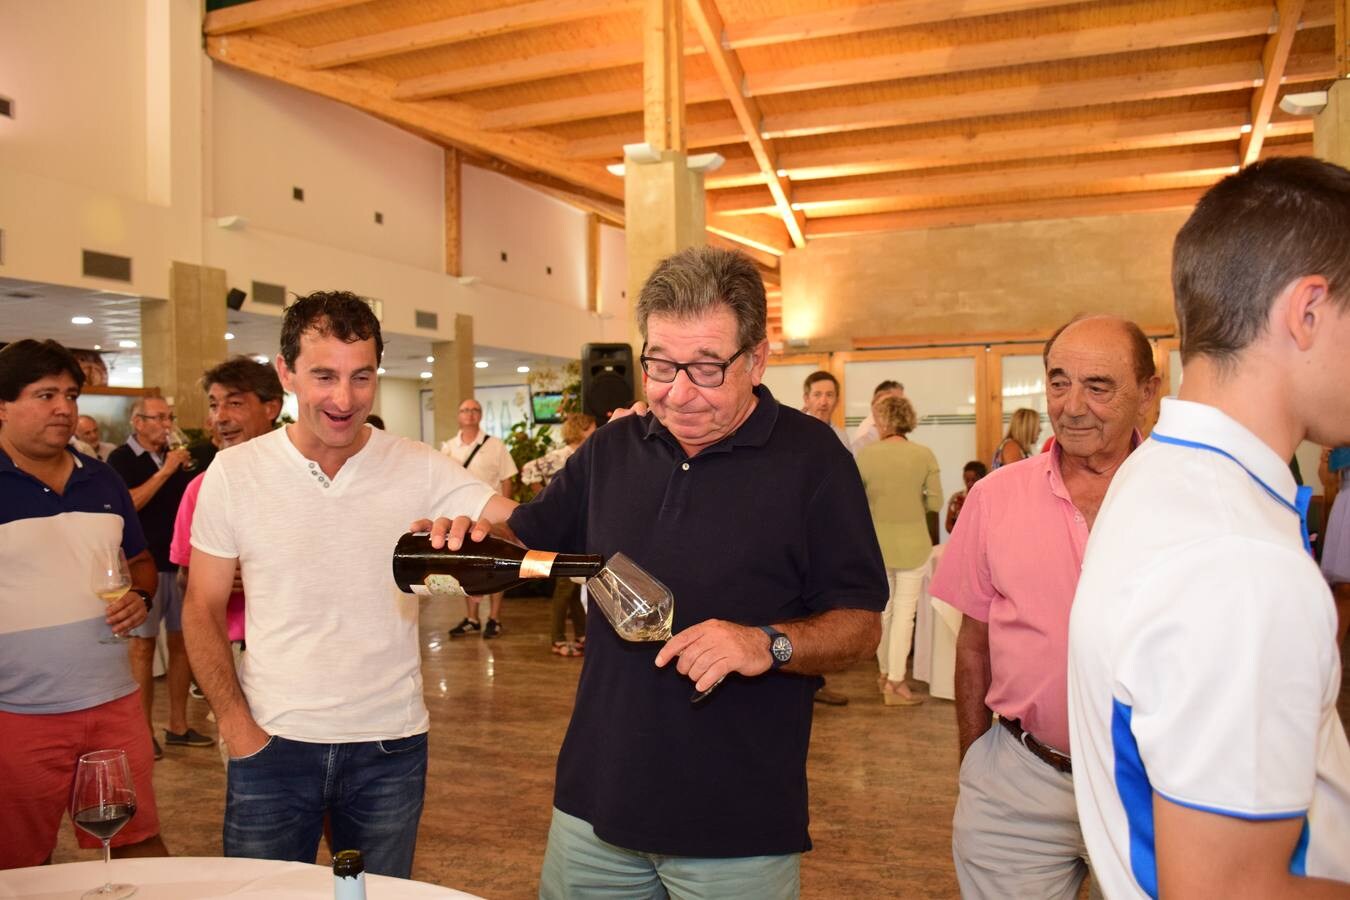 Los jugadores participantes en el Torneo Viña Ijalba, de la Liga de Golf Vino de lomejordelvinoderioja.com, disfrutaron de la cata de vinos de la bodega logroñesa.